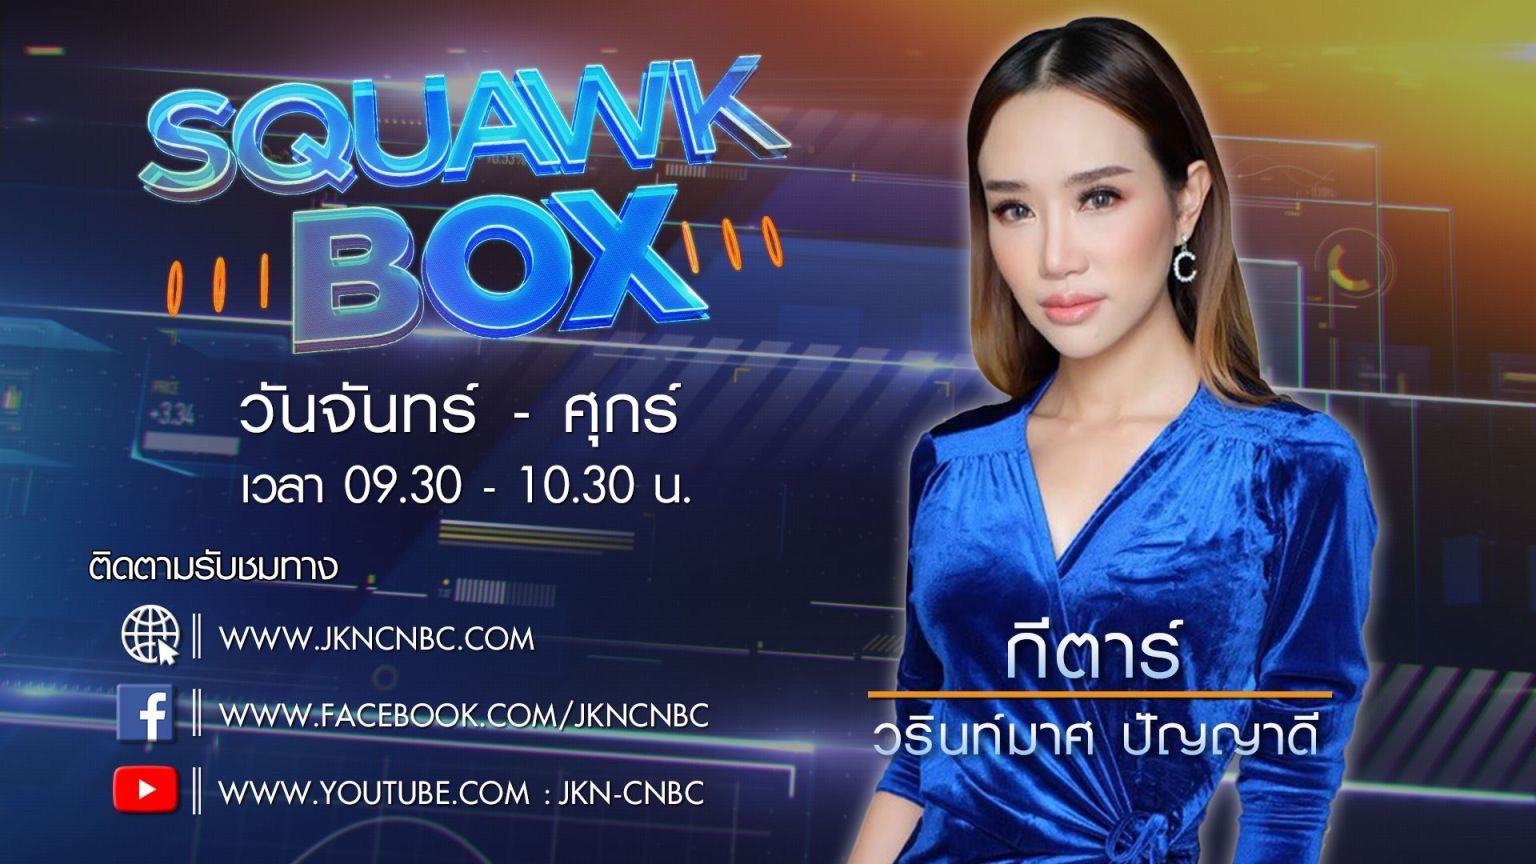 เจเคเอ็น คว้า กีตาร์ วรินท์มาศ ปัญญาดี แฟนพันธุ์แท้ CNBC International นั่งผู้ประกาศ JKN-CNBC ยกระดับข่าวเศรษฐกิจ การเงิน เมืองไทย